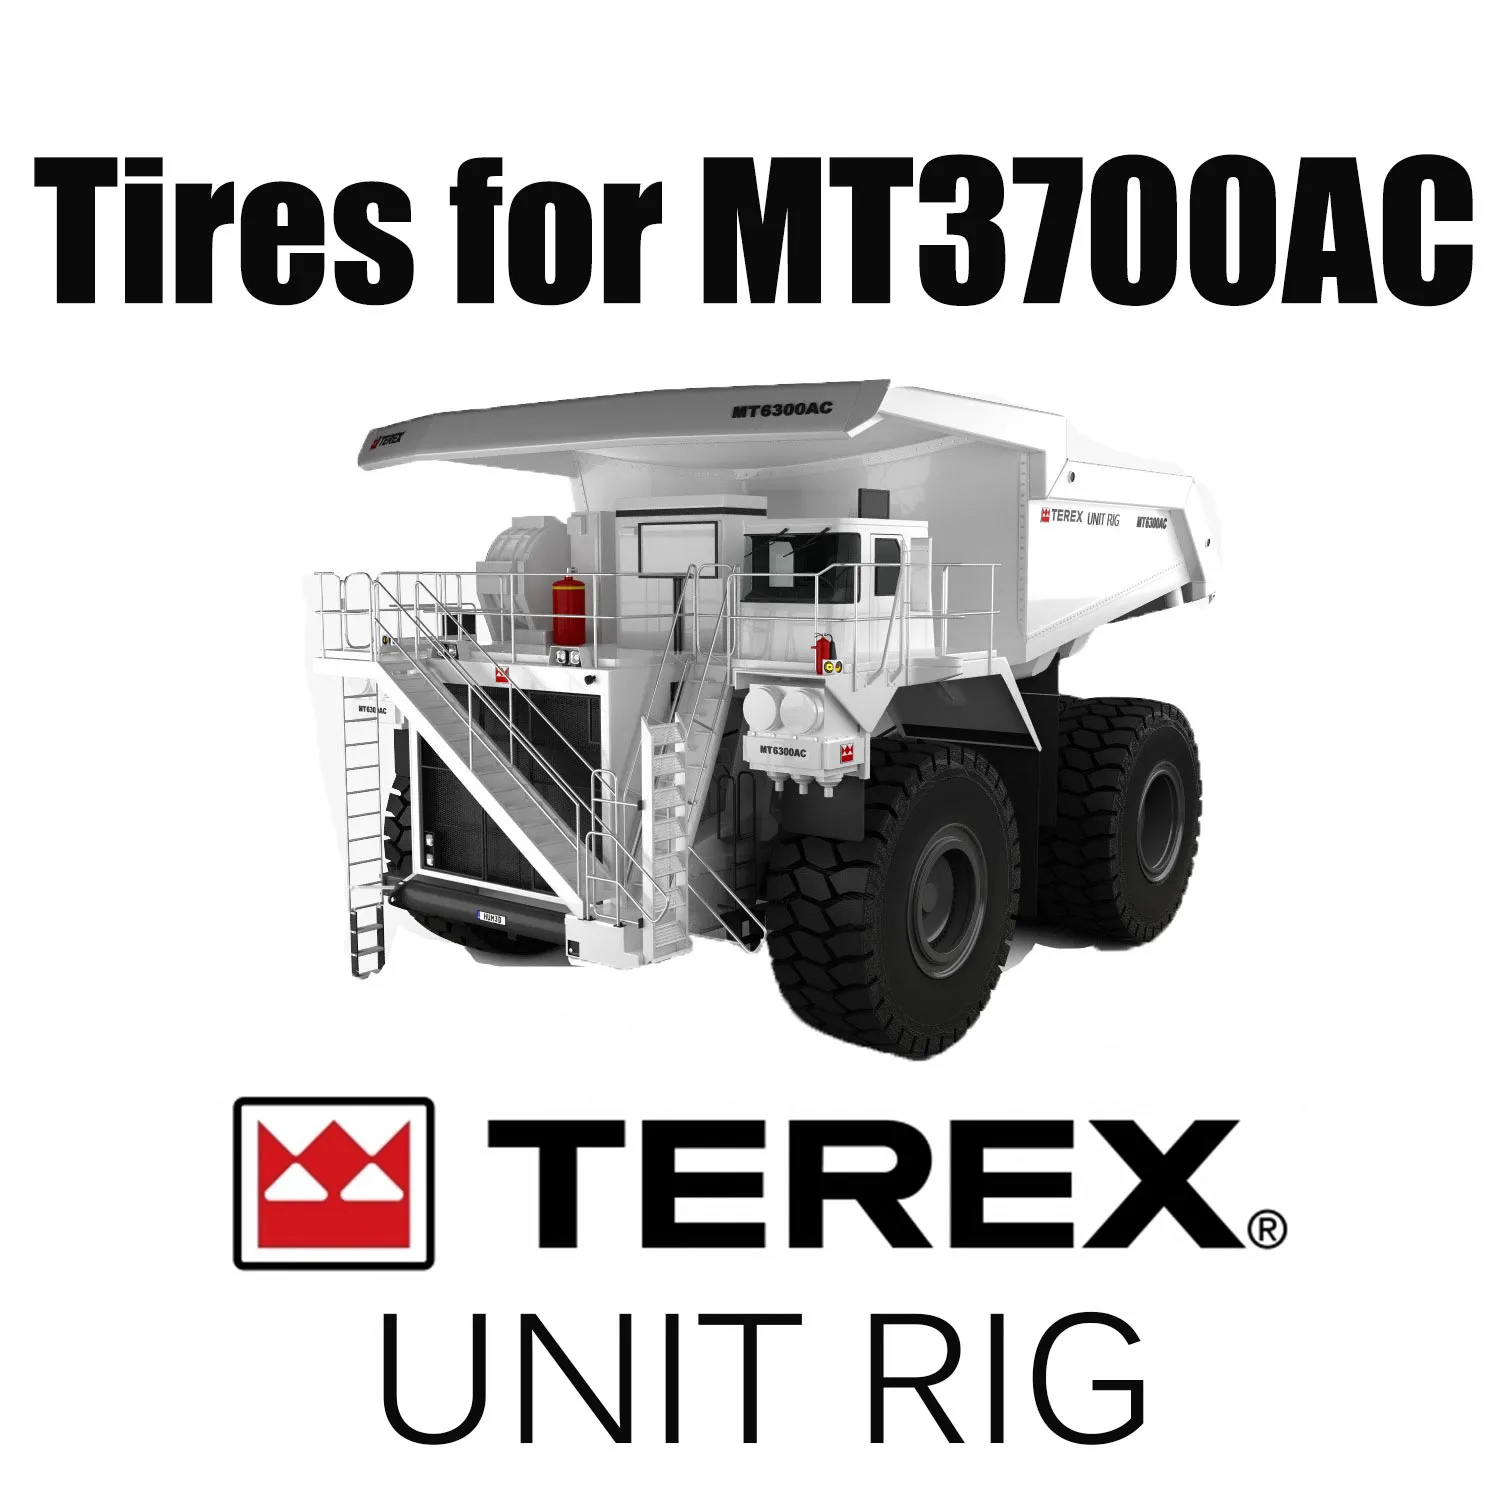 Unit Rig MT3700 AC-Haul Truck Ausgestattet mit 37.00R57-Reifen für den Bergbau und Reifen für Erdbewegungsmaschinen